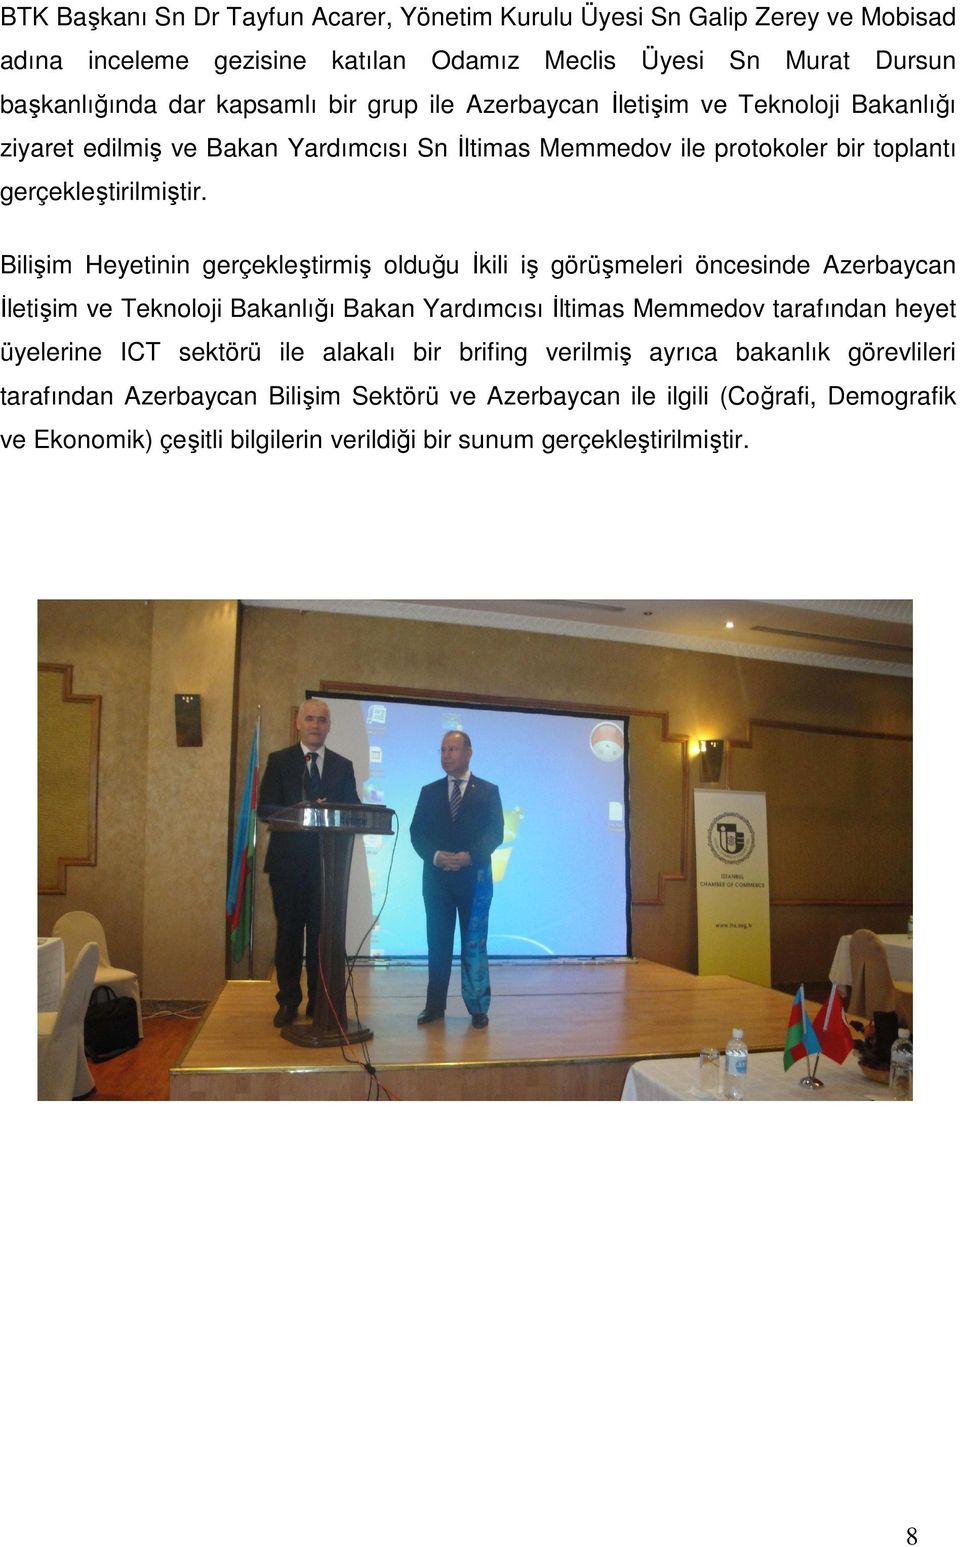 Bilişim Heyetinin gerçekleştirmiş olduğu Đkili iş görüşmeleri öncesinde Azerbaycan Đletişim ve Teknoloji Bakanlığı Bakan Yardımcısı Đltimas Memmedov tarafından heyet üyelerine ICT